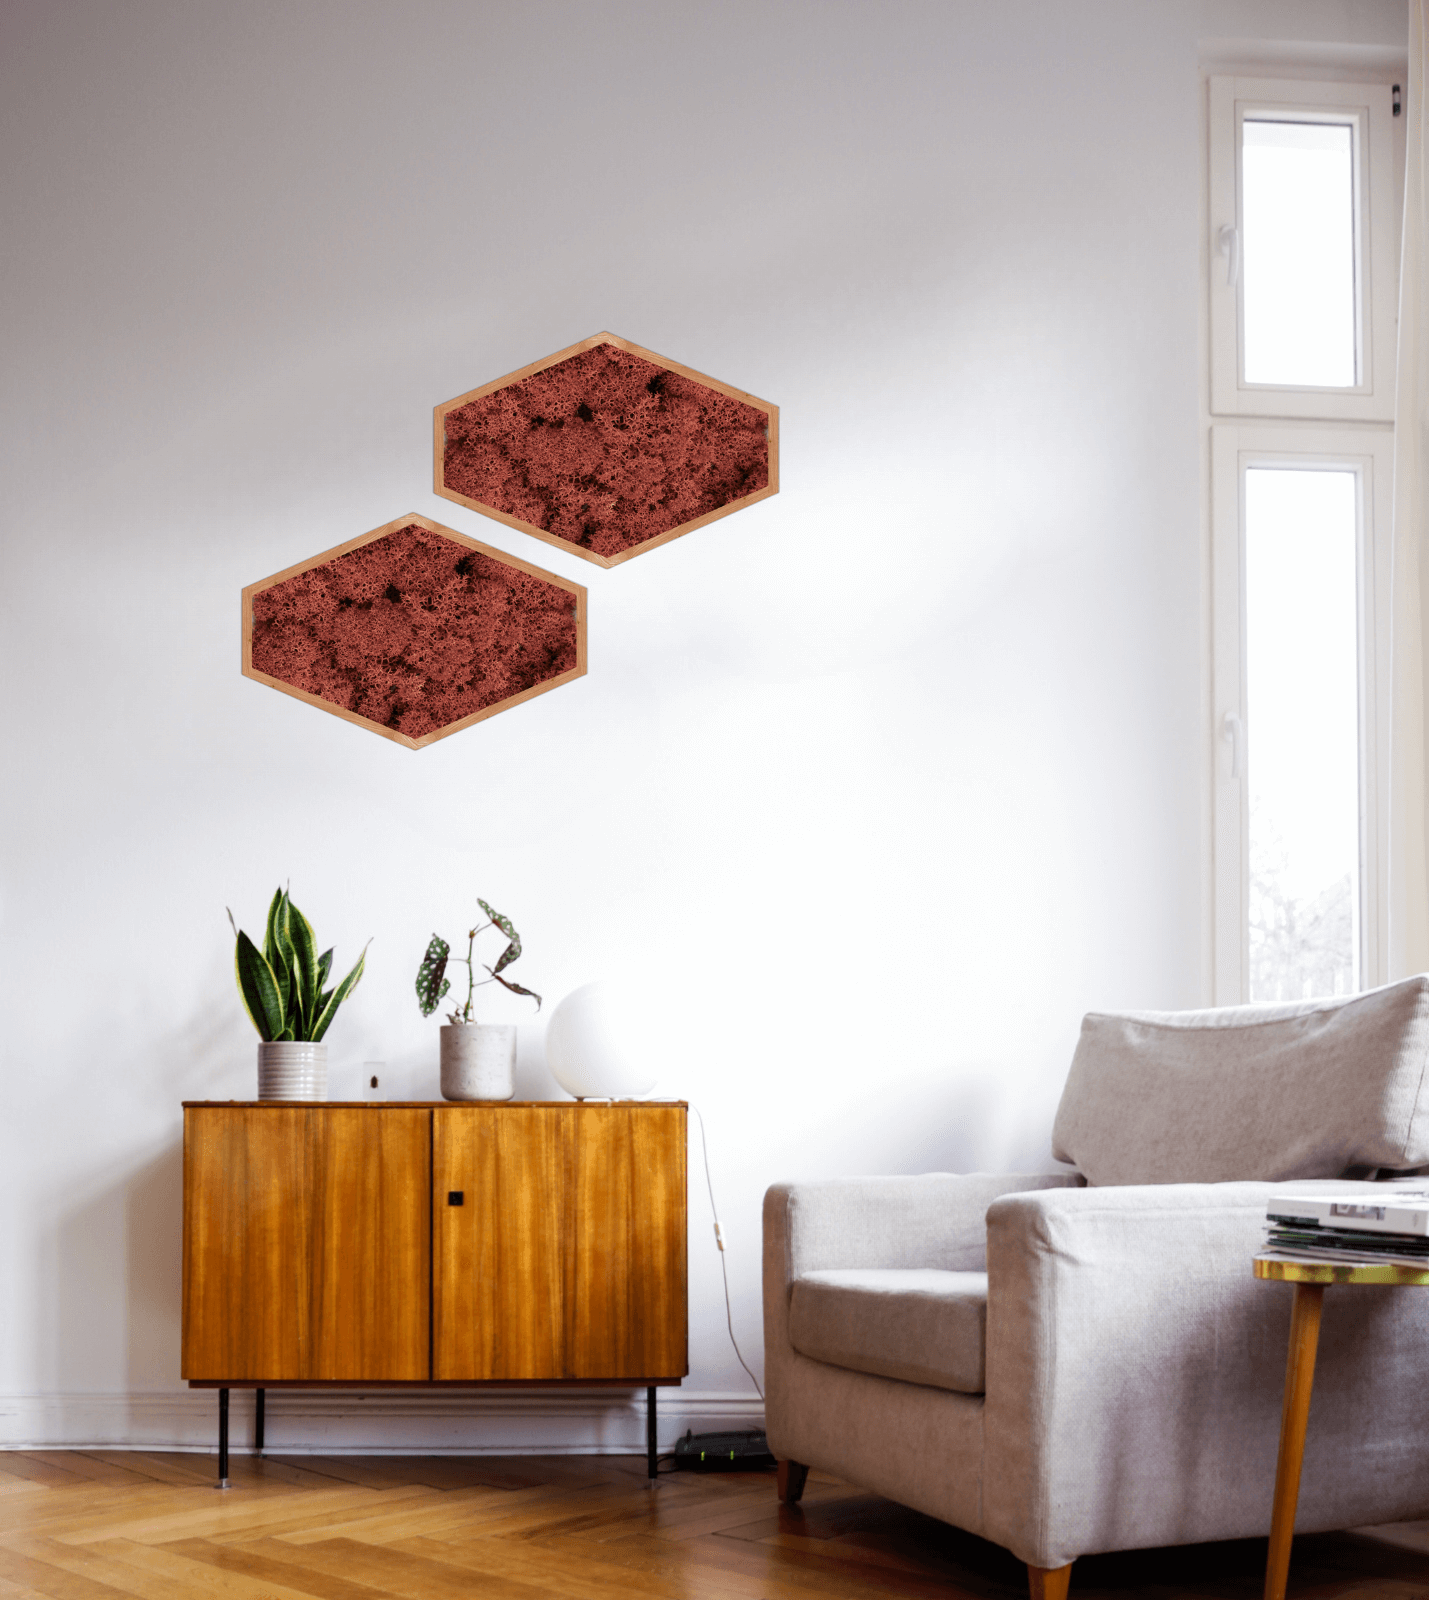 Décoration intérieure au design floral en lichen stabilisé, plantes naturelles stabilisées, dans une maison contemporaine. Tableau végétal stabilités, mosaïques accrochées au mur en lichen stabilisé rouge. 